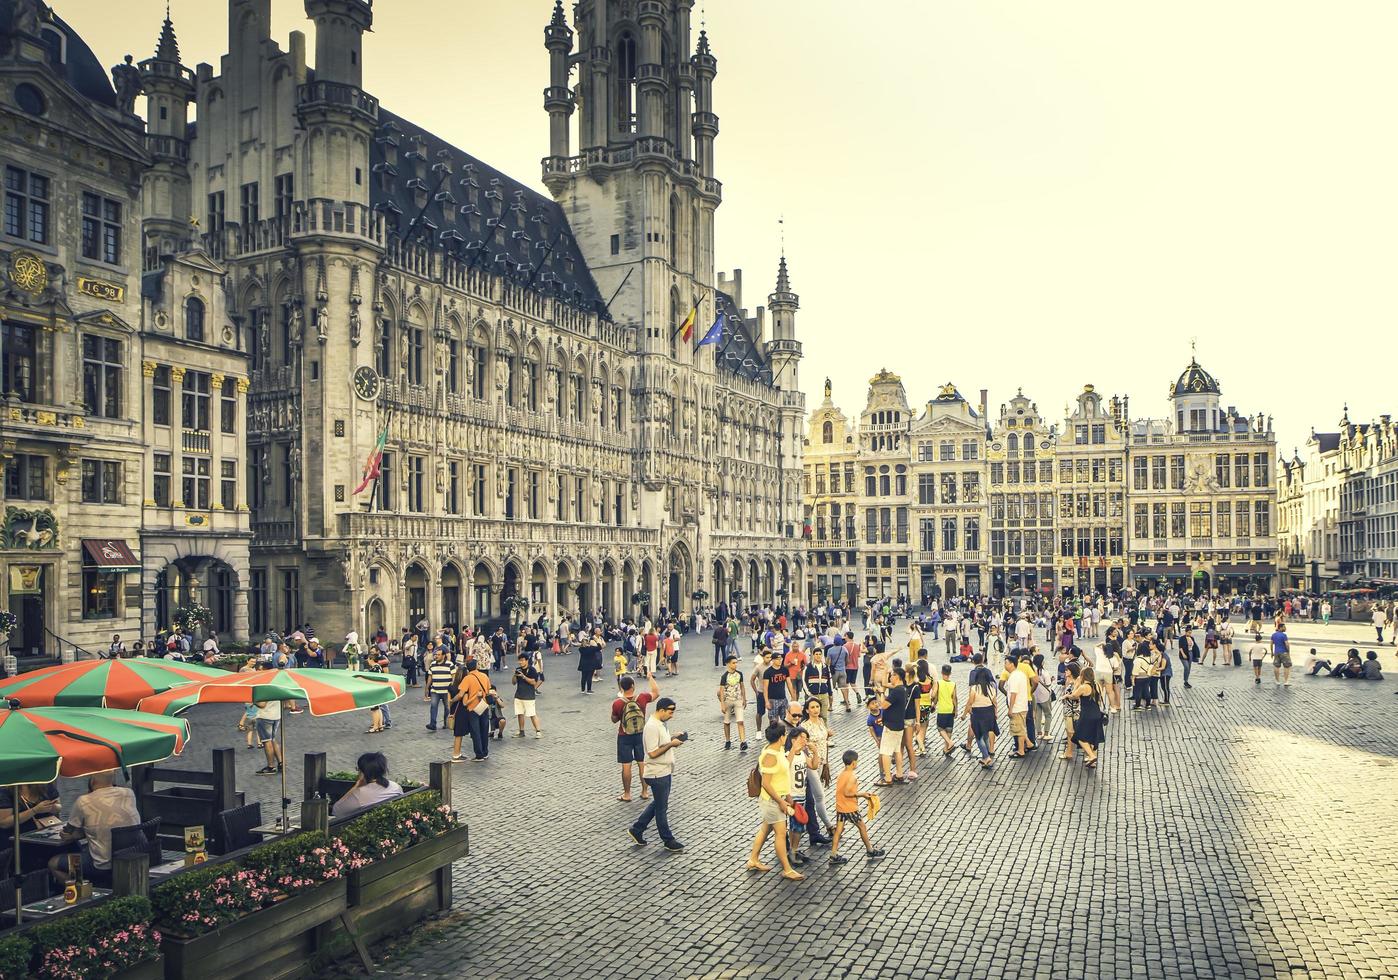 brugge, belgio, 2019 - piazza con turisti nel centro della città foto